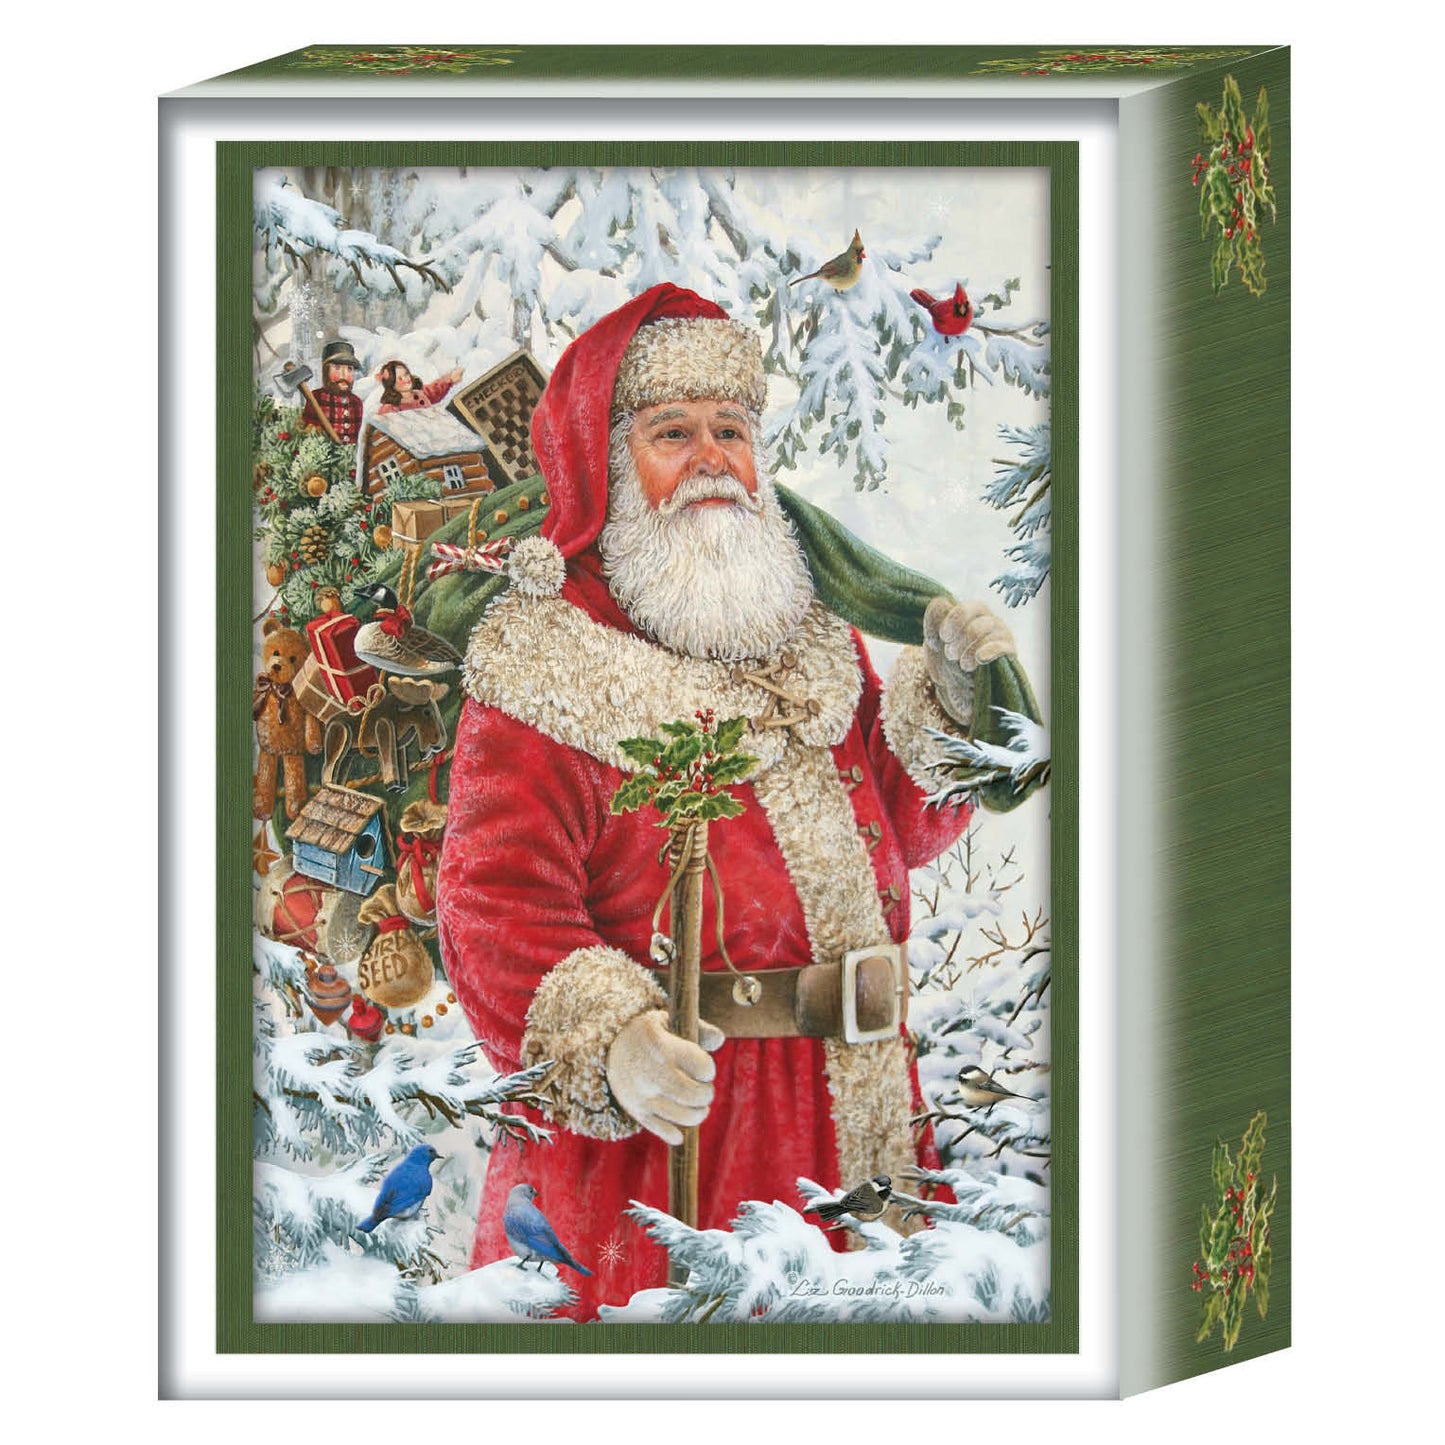 Woodland Santa -  26 Boxed Christmas Cards and Envelopes